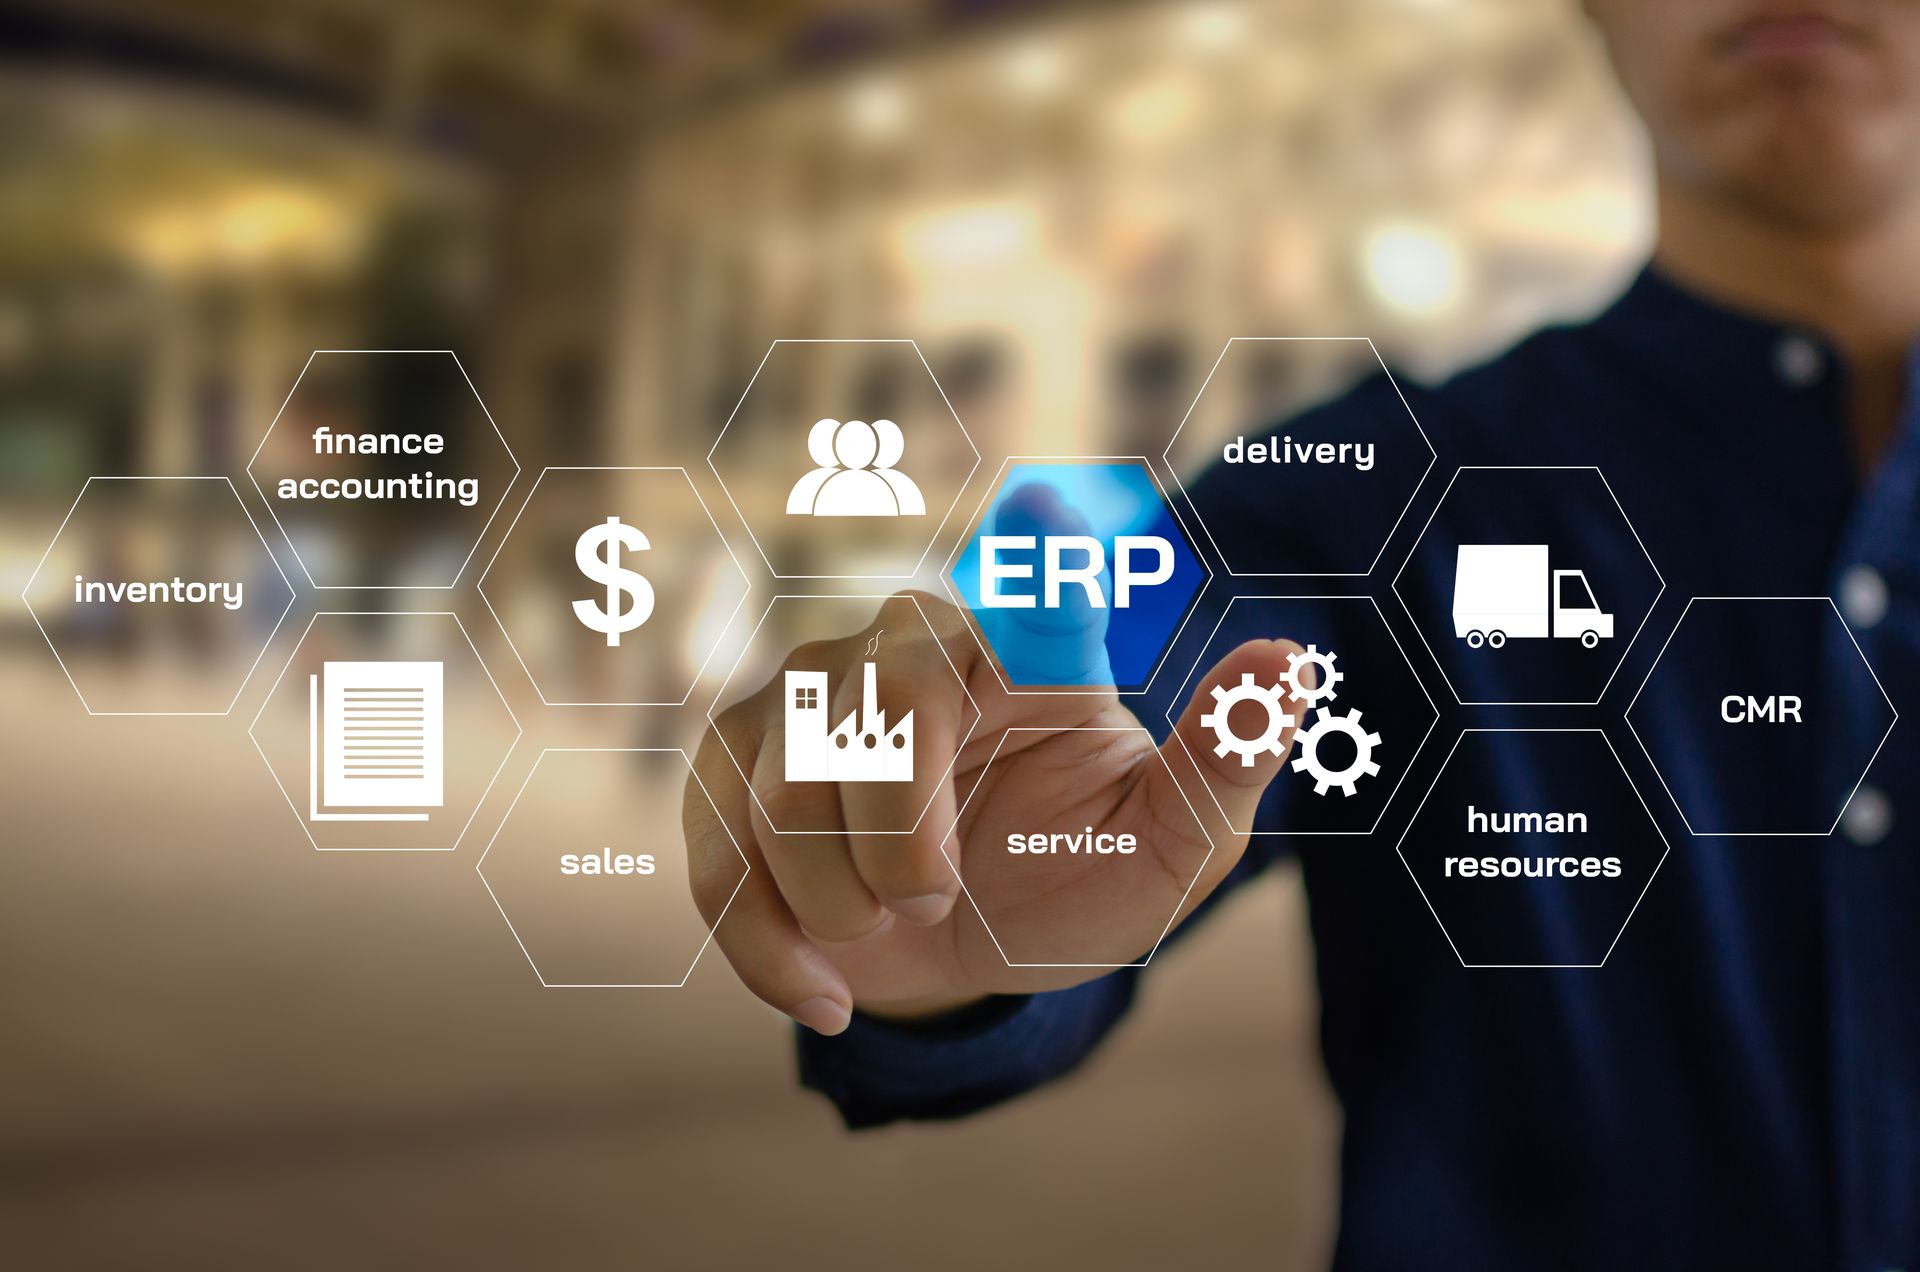 ERP ย่อมาจากคำว่า Enterprise Resource Planning คือ ระบบที่มาช่วยในการบริหารจัดการทรัพยากรในองค์กร